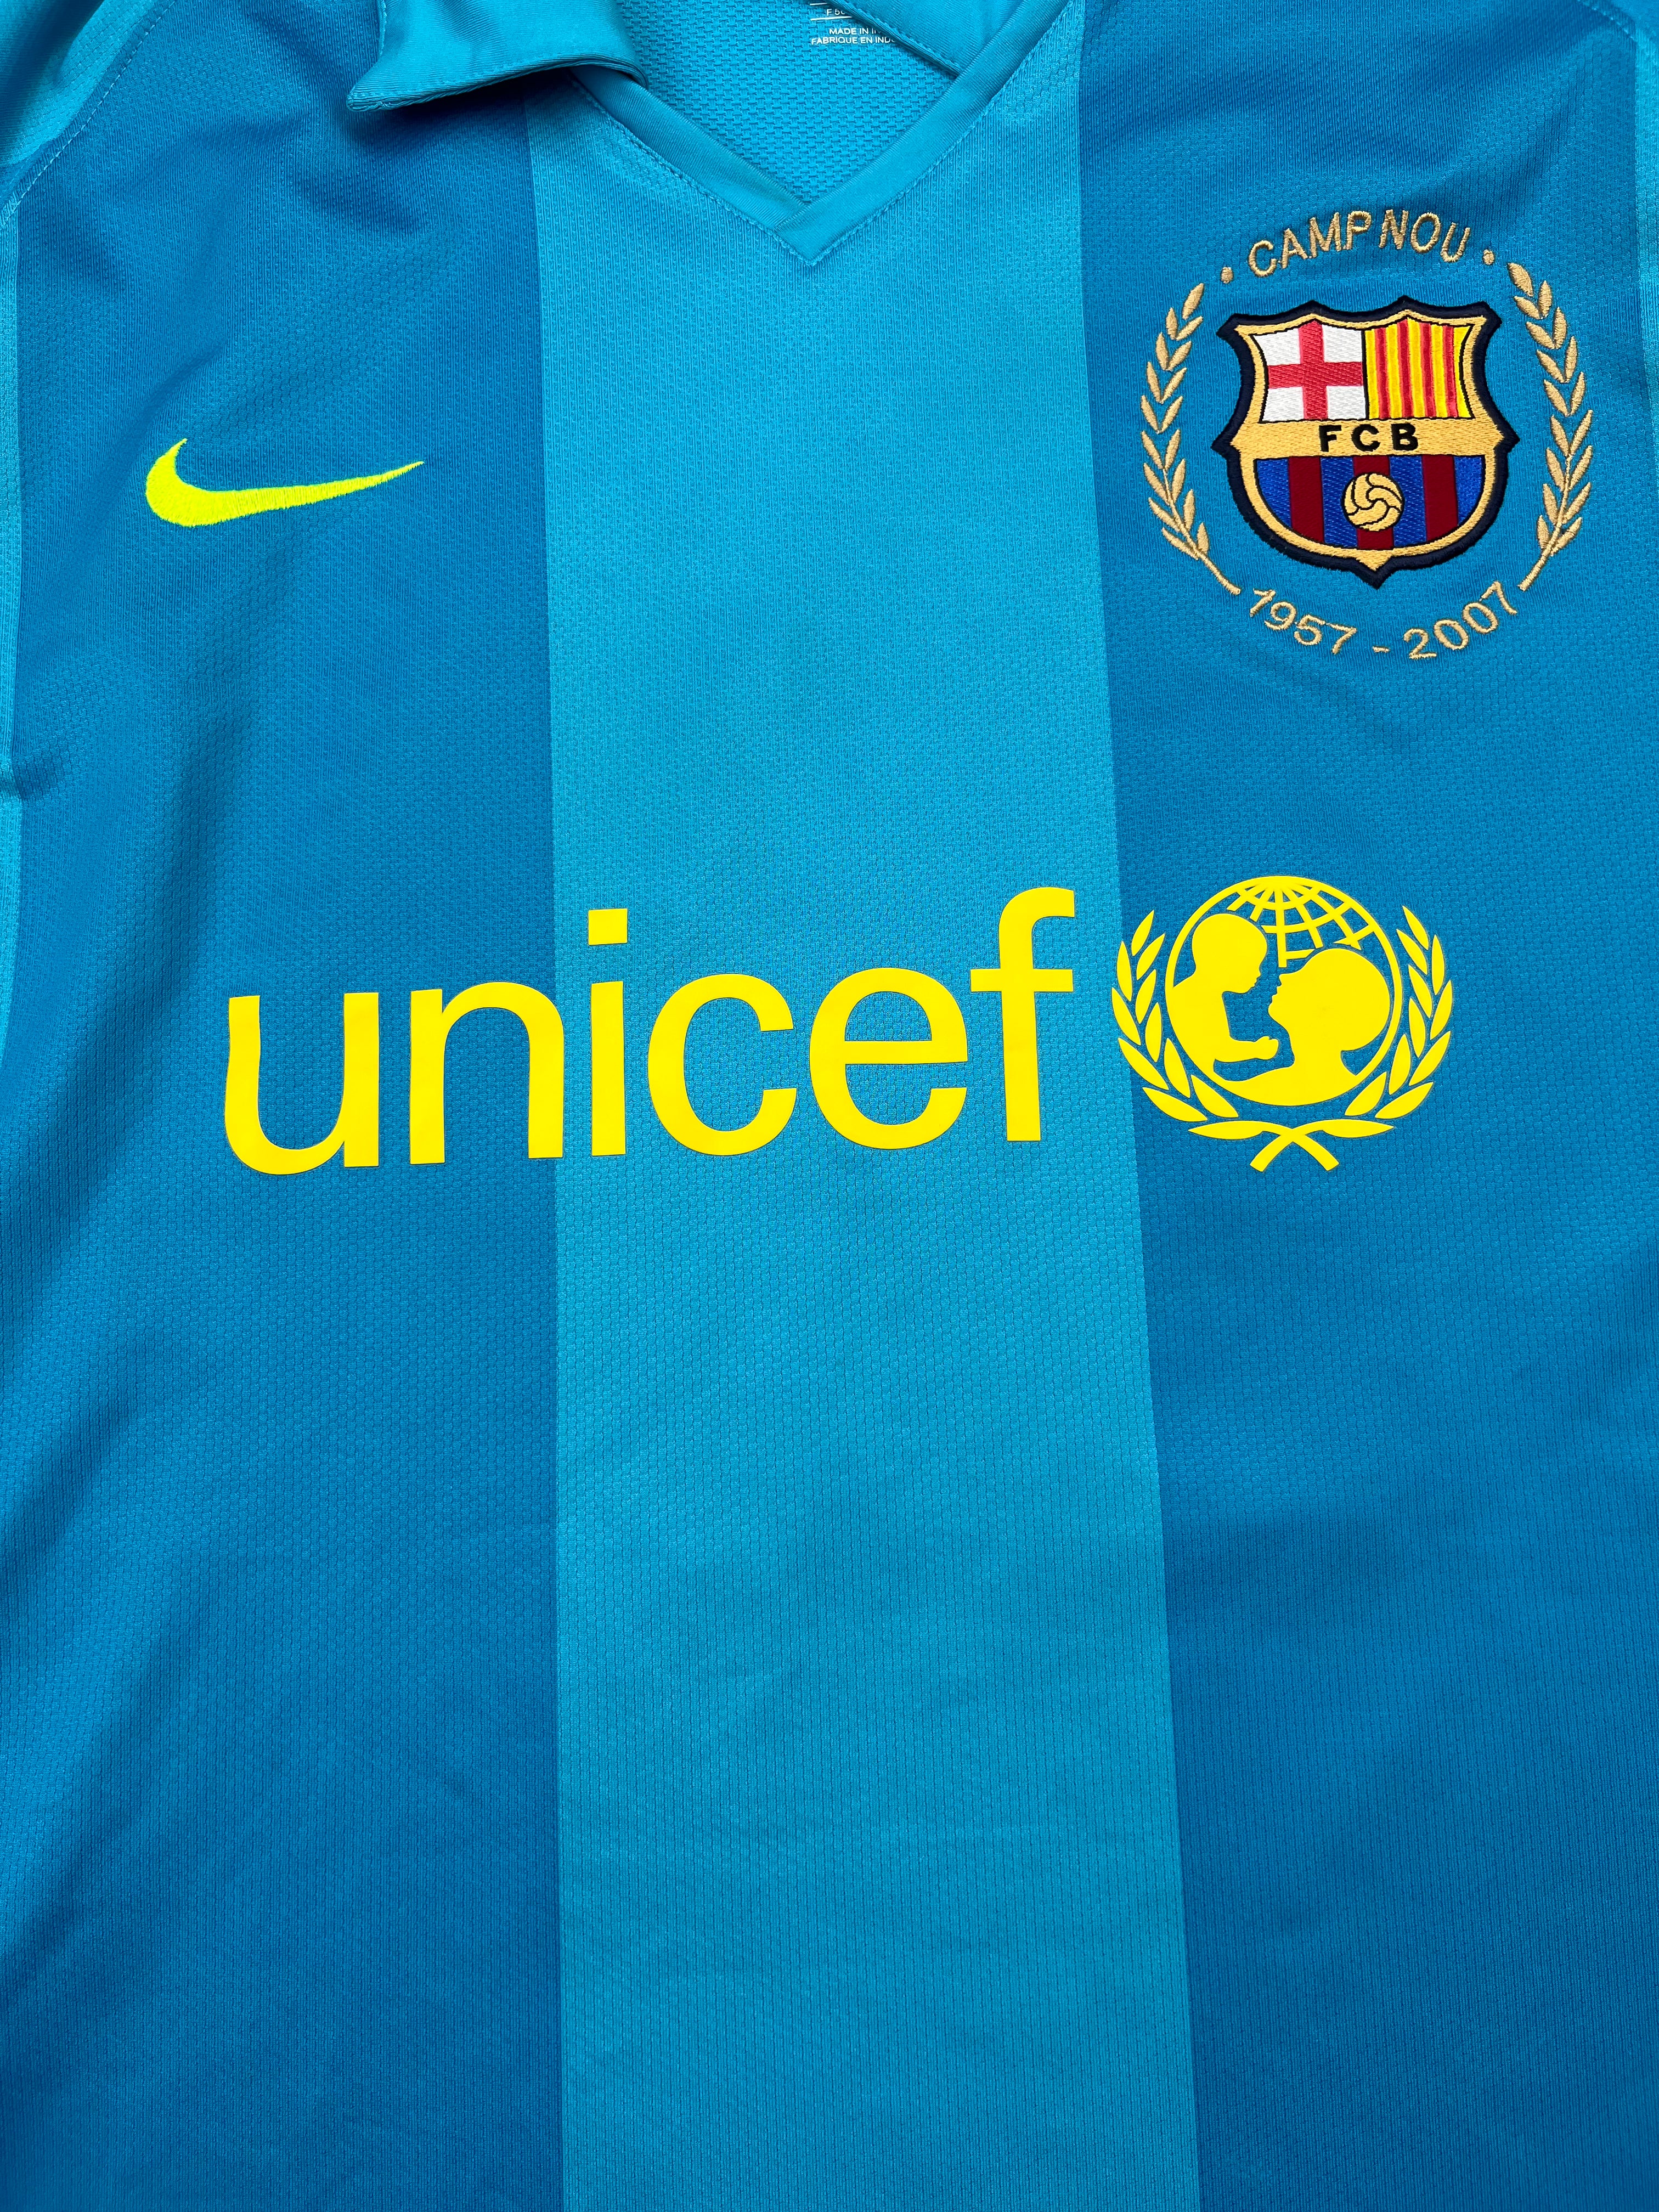 2007/08 Barcelona Away Shirt Henry #14 (XL) 7.5/10